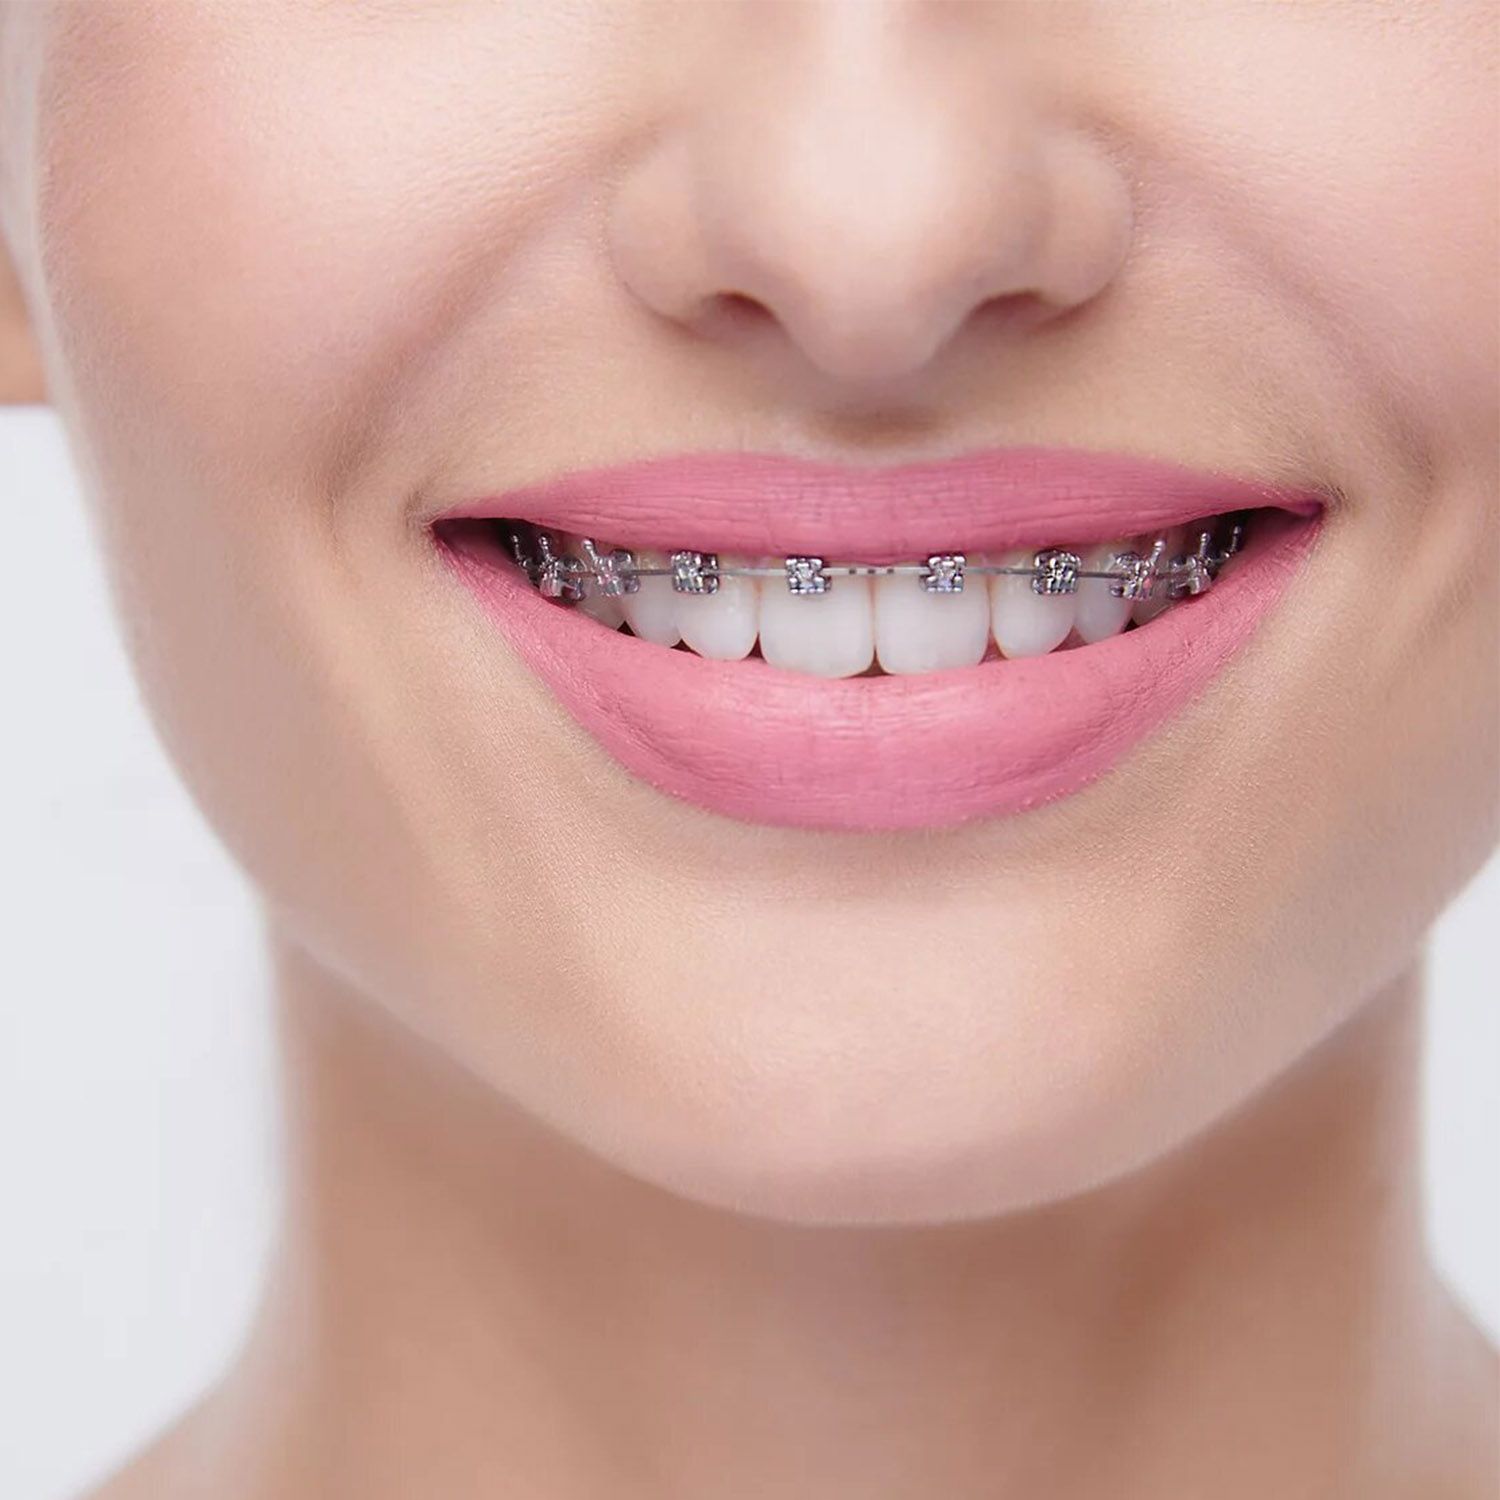 Uno de los aspectos que debes saber sobre la ortodoncia es que es indoloro